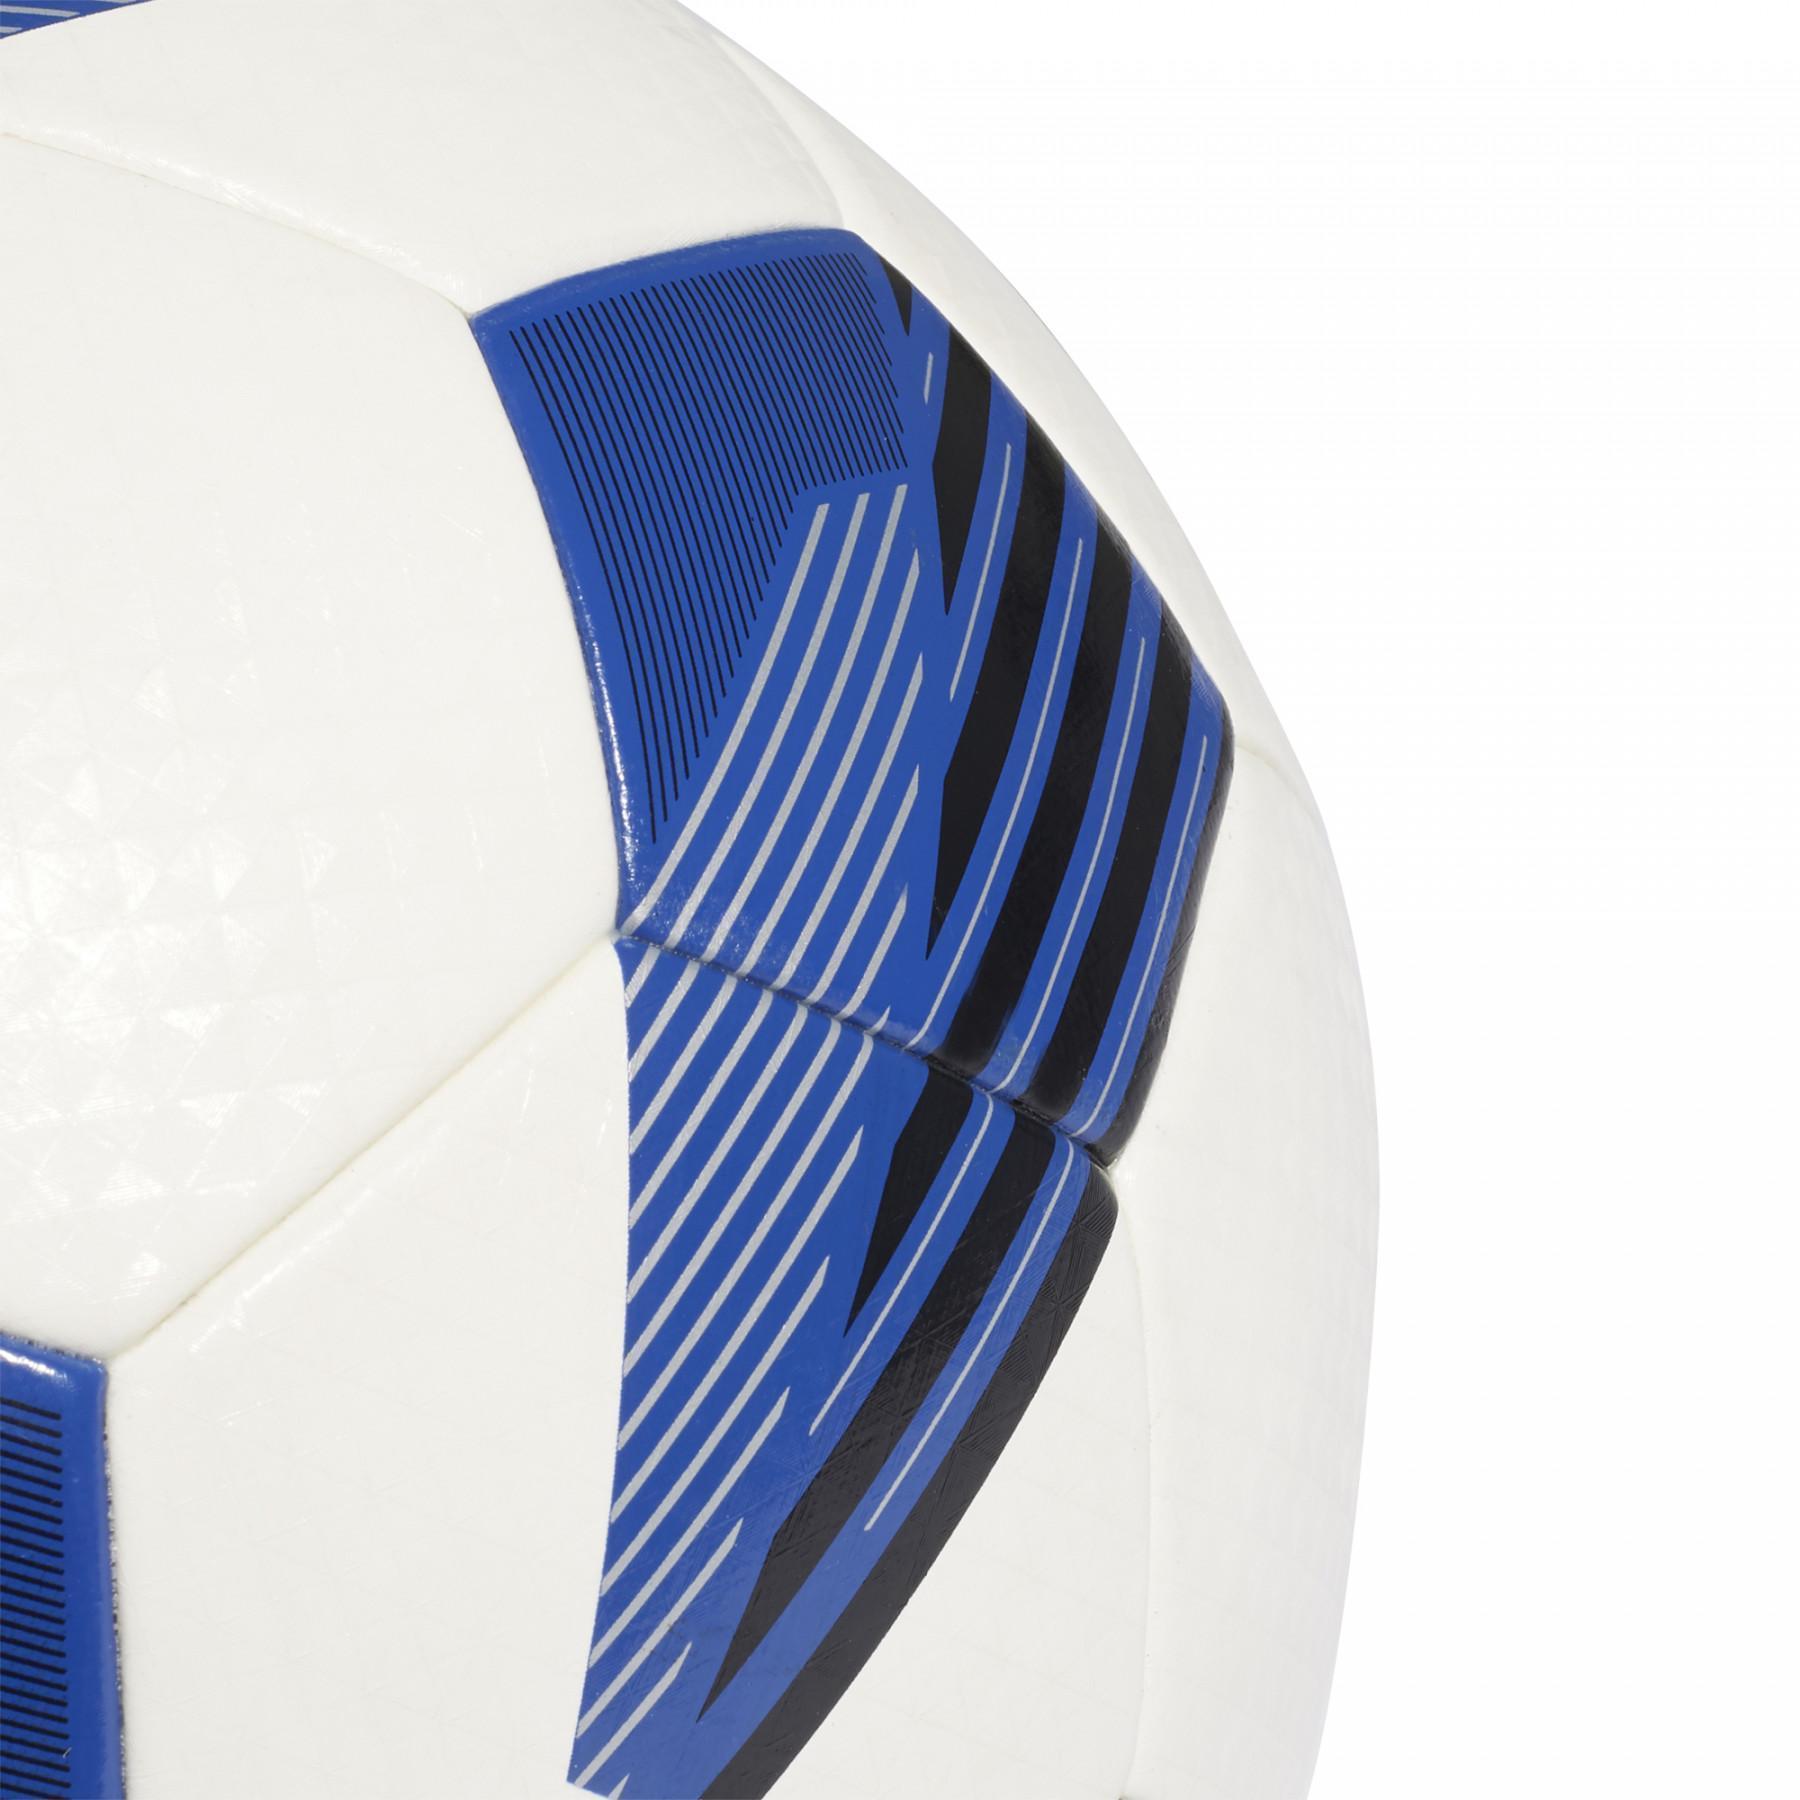 Ballon adidas Tiro Artificial TF League